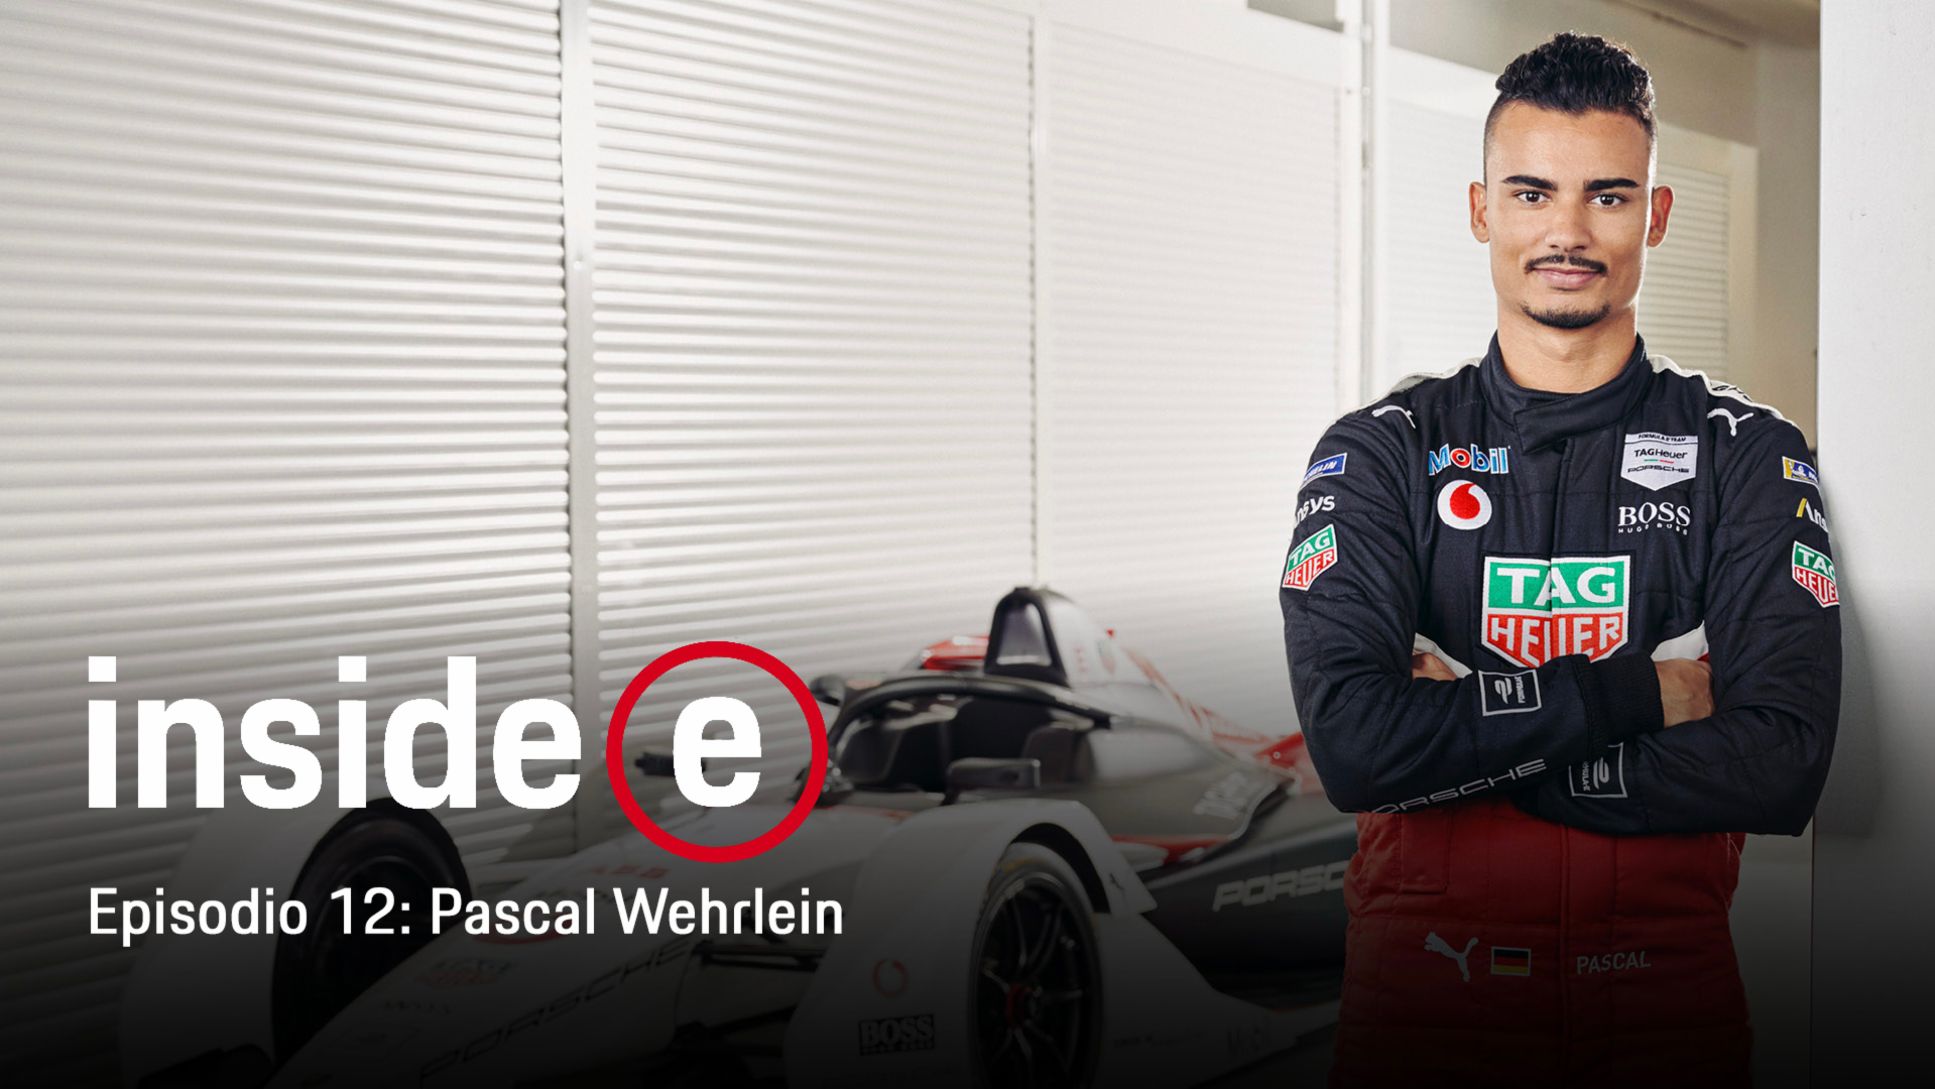 Podcast “Inside E”, episodio 11 con Pascal Wehrlein, 2020, Porsche AG